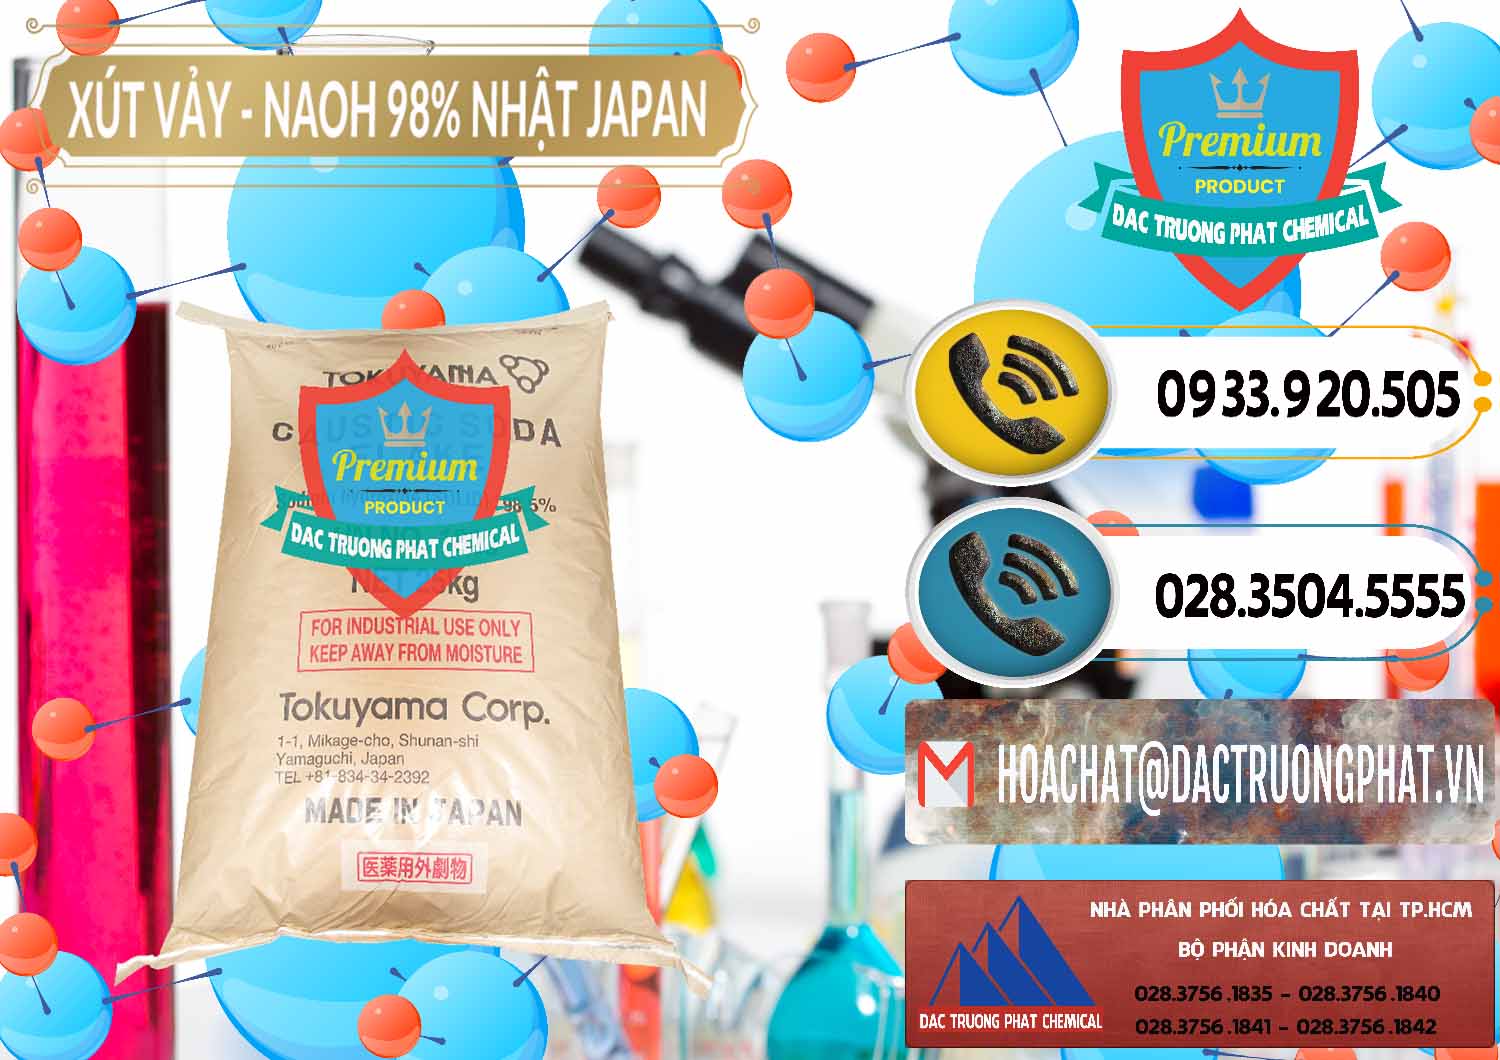 Nơi chuyên bán và phân phối Xút Vảy - NaOH Vảy 98% Tokuyama Nhật Bản Japan - 0173 - Nhập khẩu & cung cấp hóa chất tại TP.HCM - hoachatdetnhuom.vn